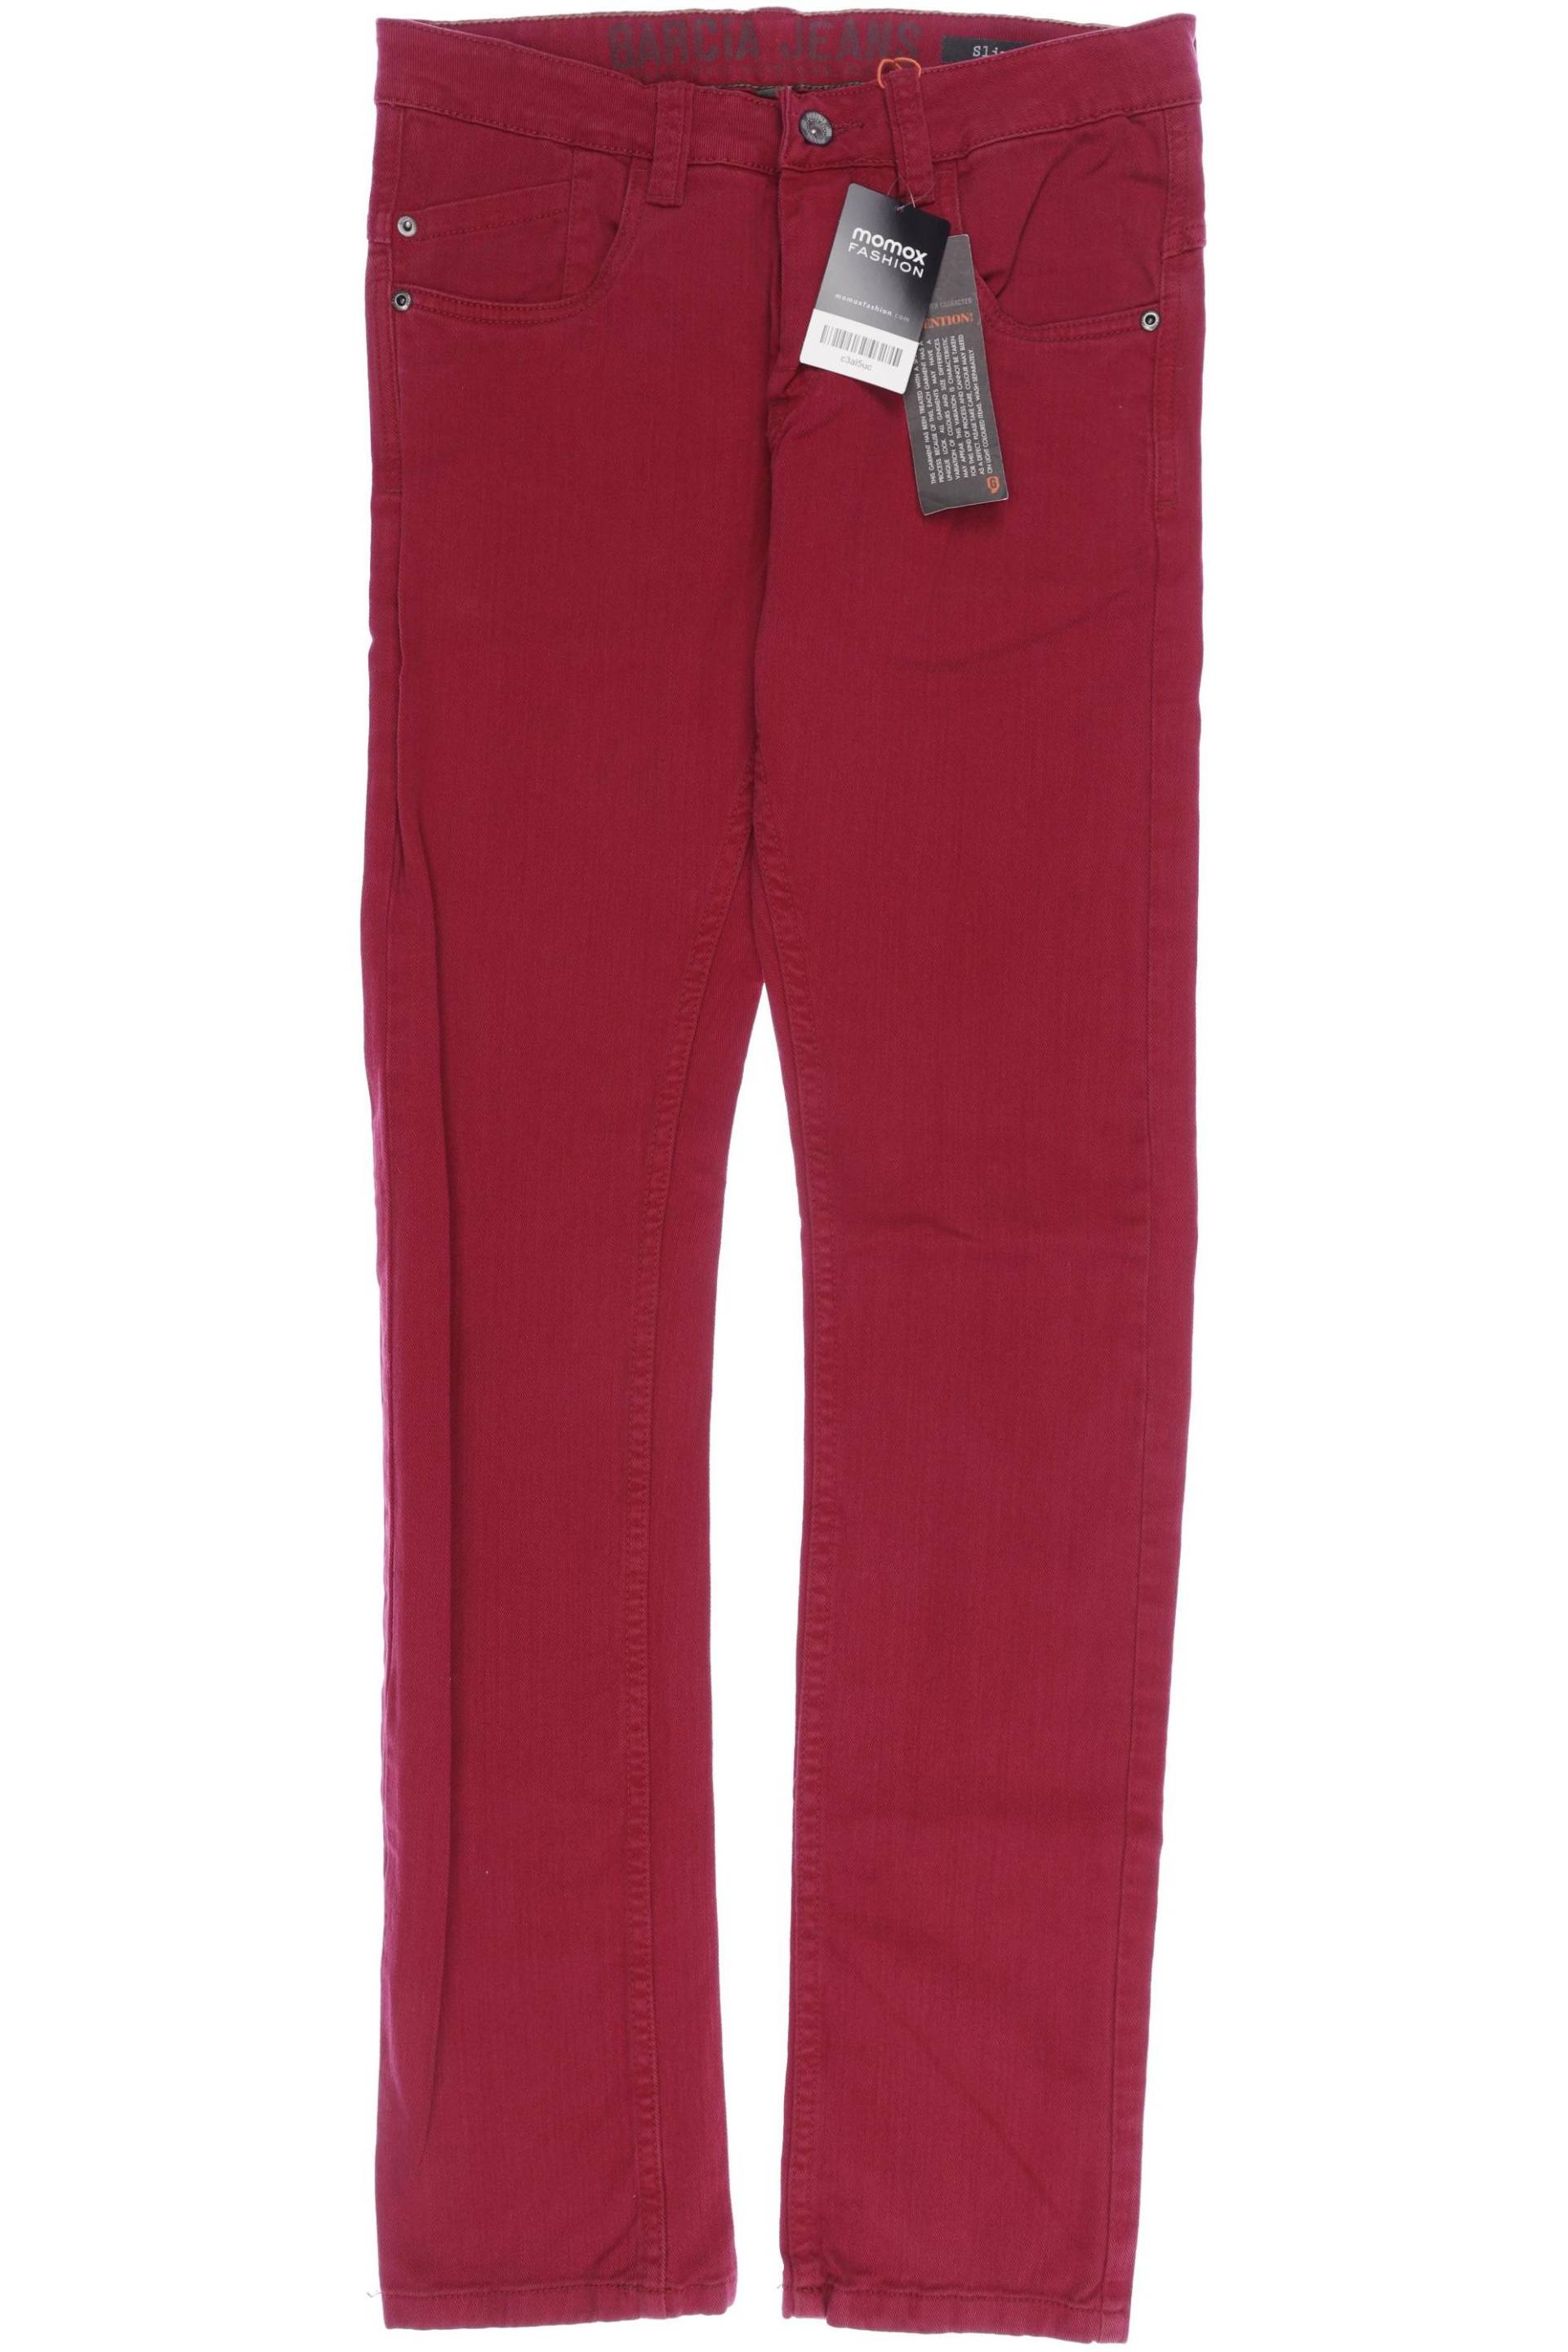 Garcia Damen Jeans, rot, Gr. 176 von GARCIA